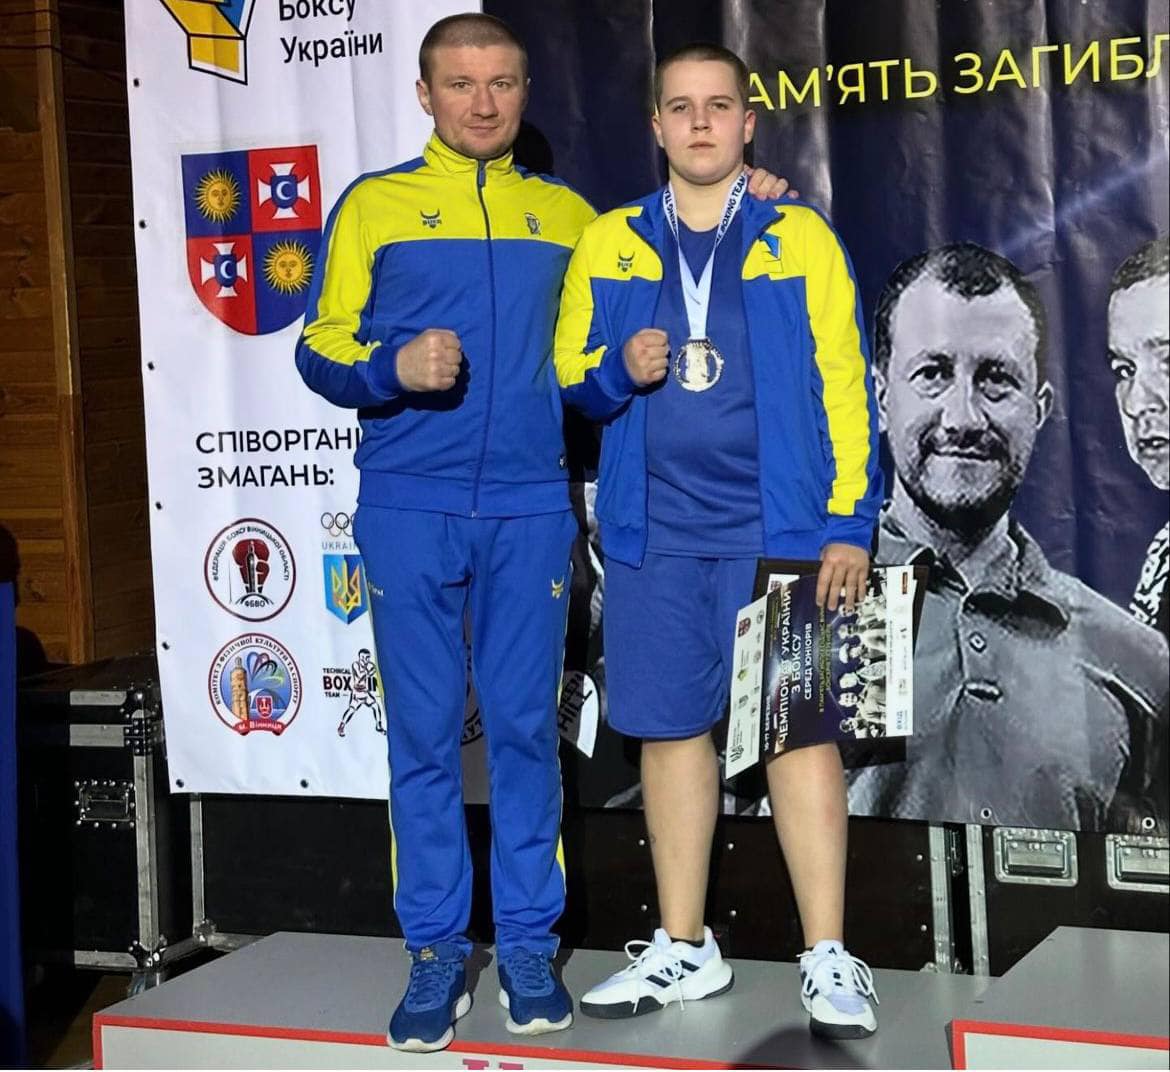 Каменчанка Арина Прищепа - серебряная призерка чемпионата Украины по боксу